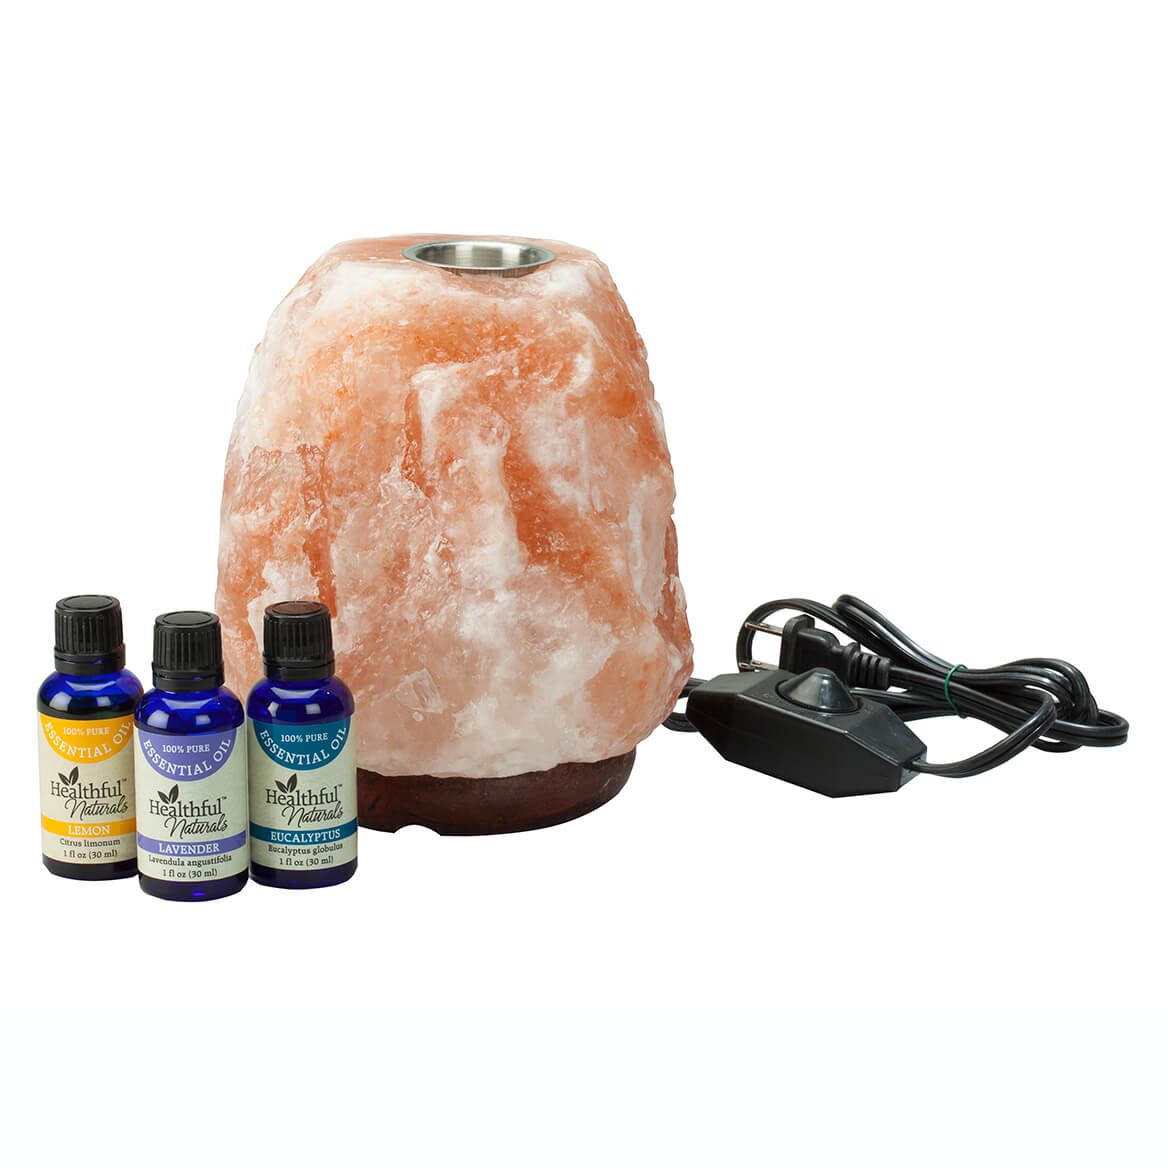 Healthful™ Naturals Himalayan Salt & Essential Oil Basic Kit + '-' + 363147